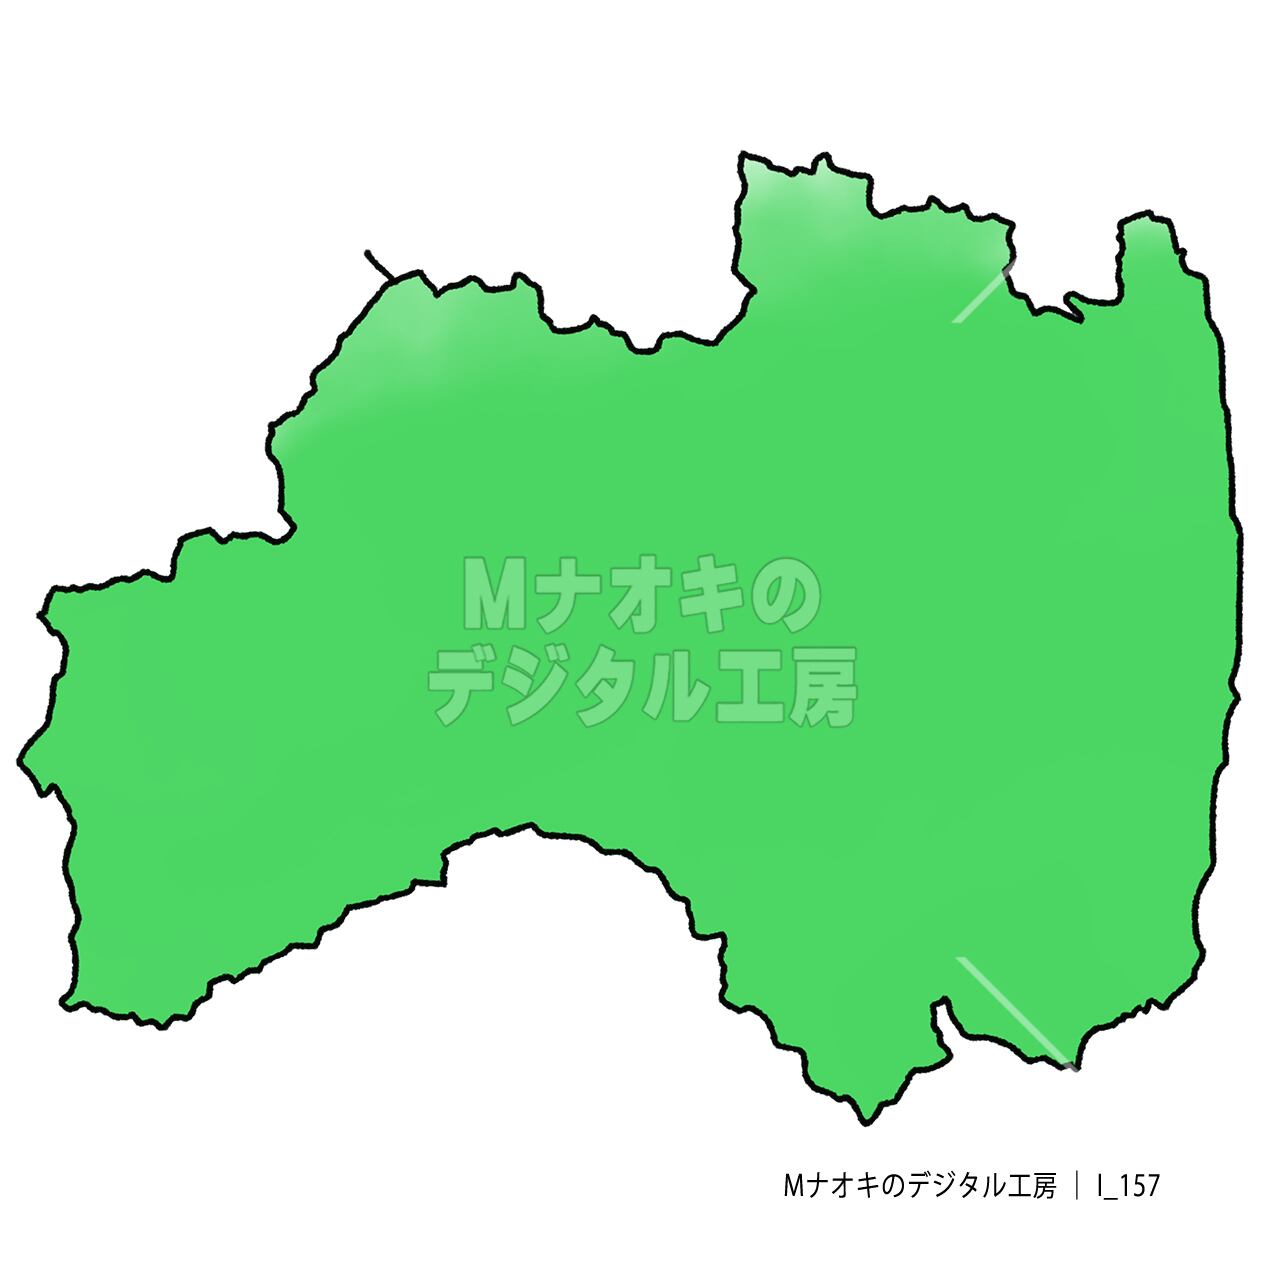 少しゆるい福島県地図　Slightly loose Fukushima prefecture map